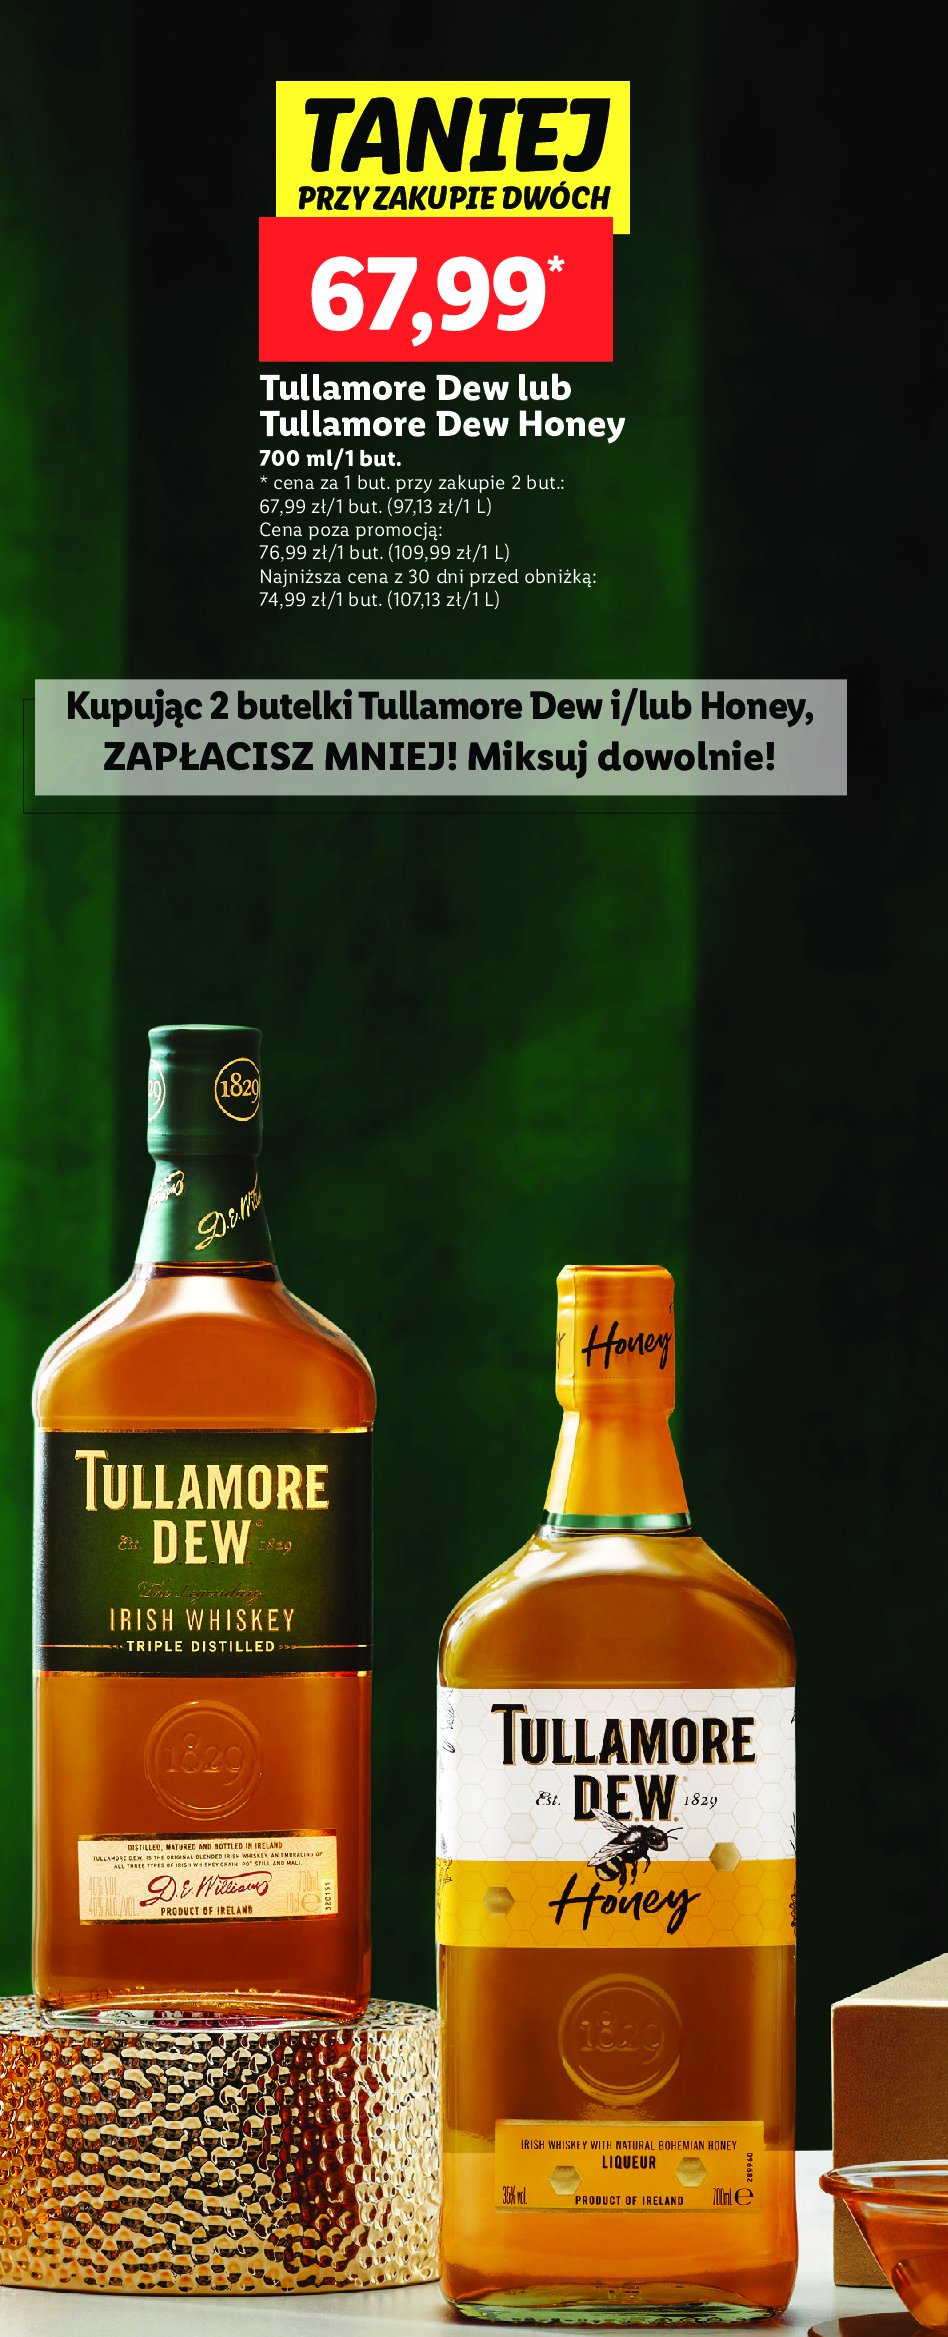 Whisky Tullamore dew honey promocja